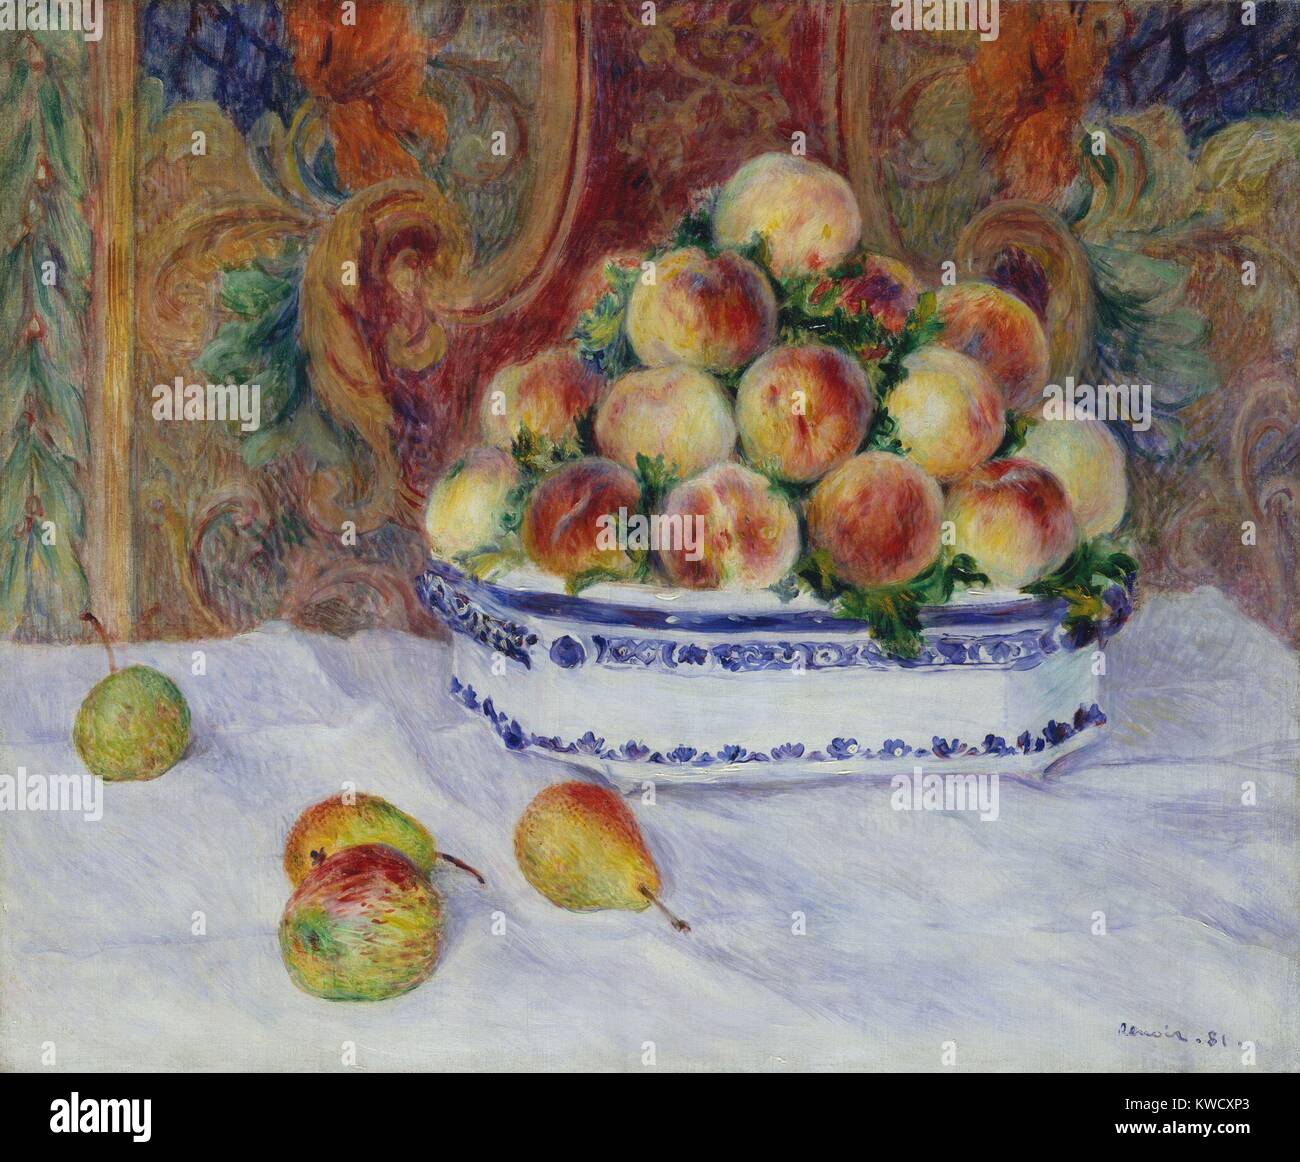 Stillleben mit Pfirsichen, von Auguste Renoir, 1881, französischer impressionistischer Malerei, Öl auf Leinwand. Dies ist einer von zwei Stillleben von pfirsichen Renoir am Haus des Mäzen Paul Berard (BSLOC 2017 3 83 lackiert) Stockfoto